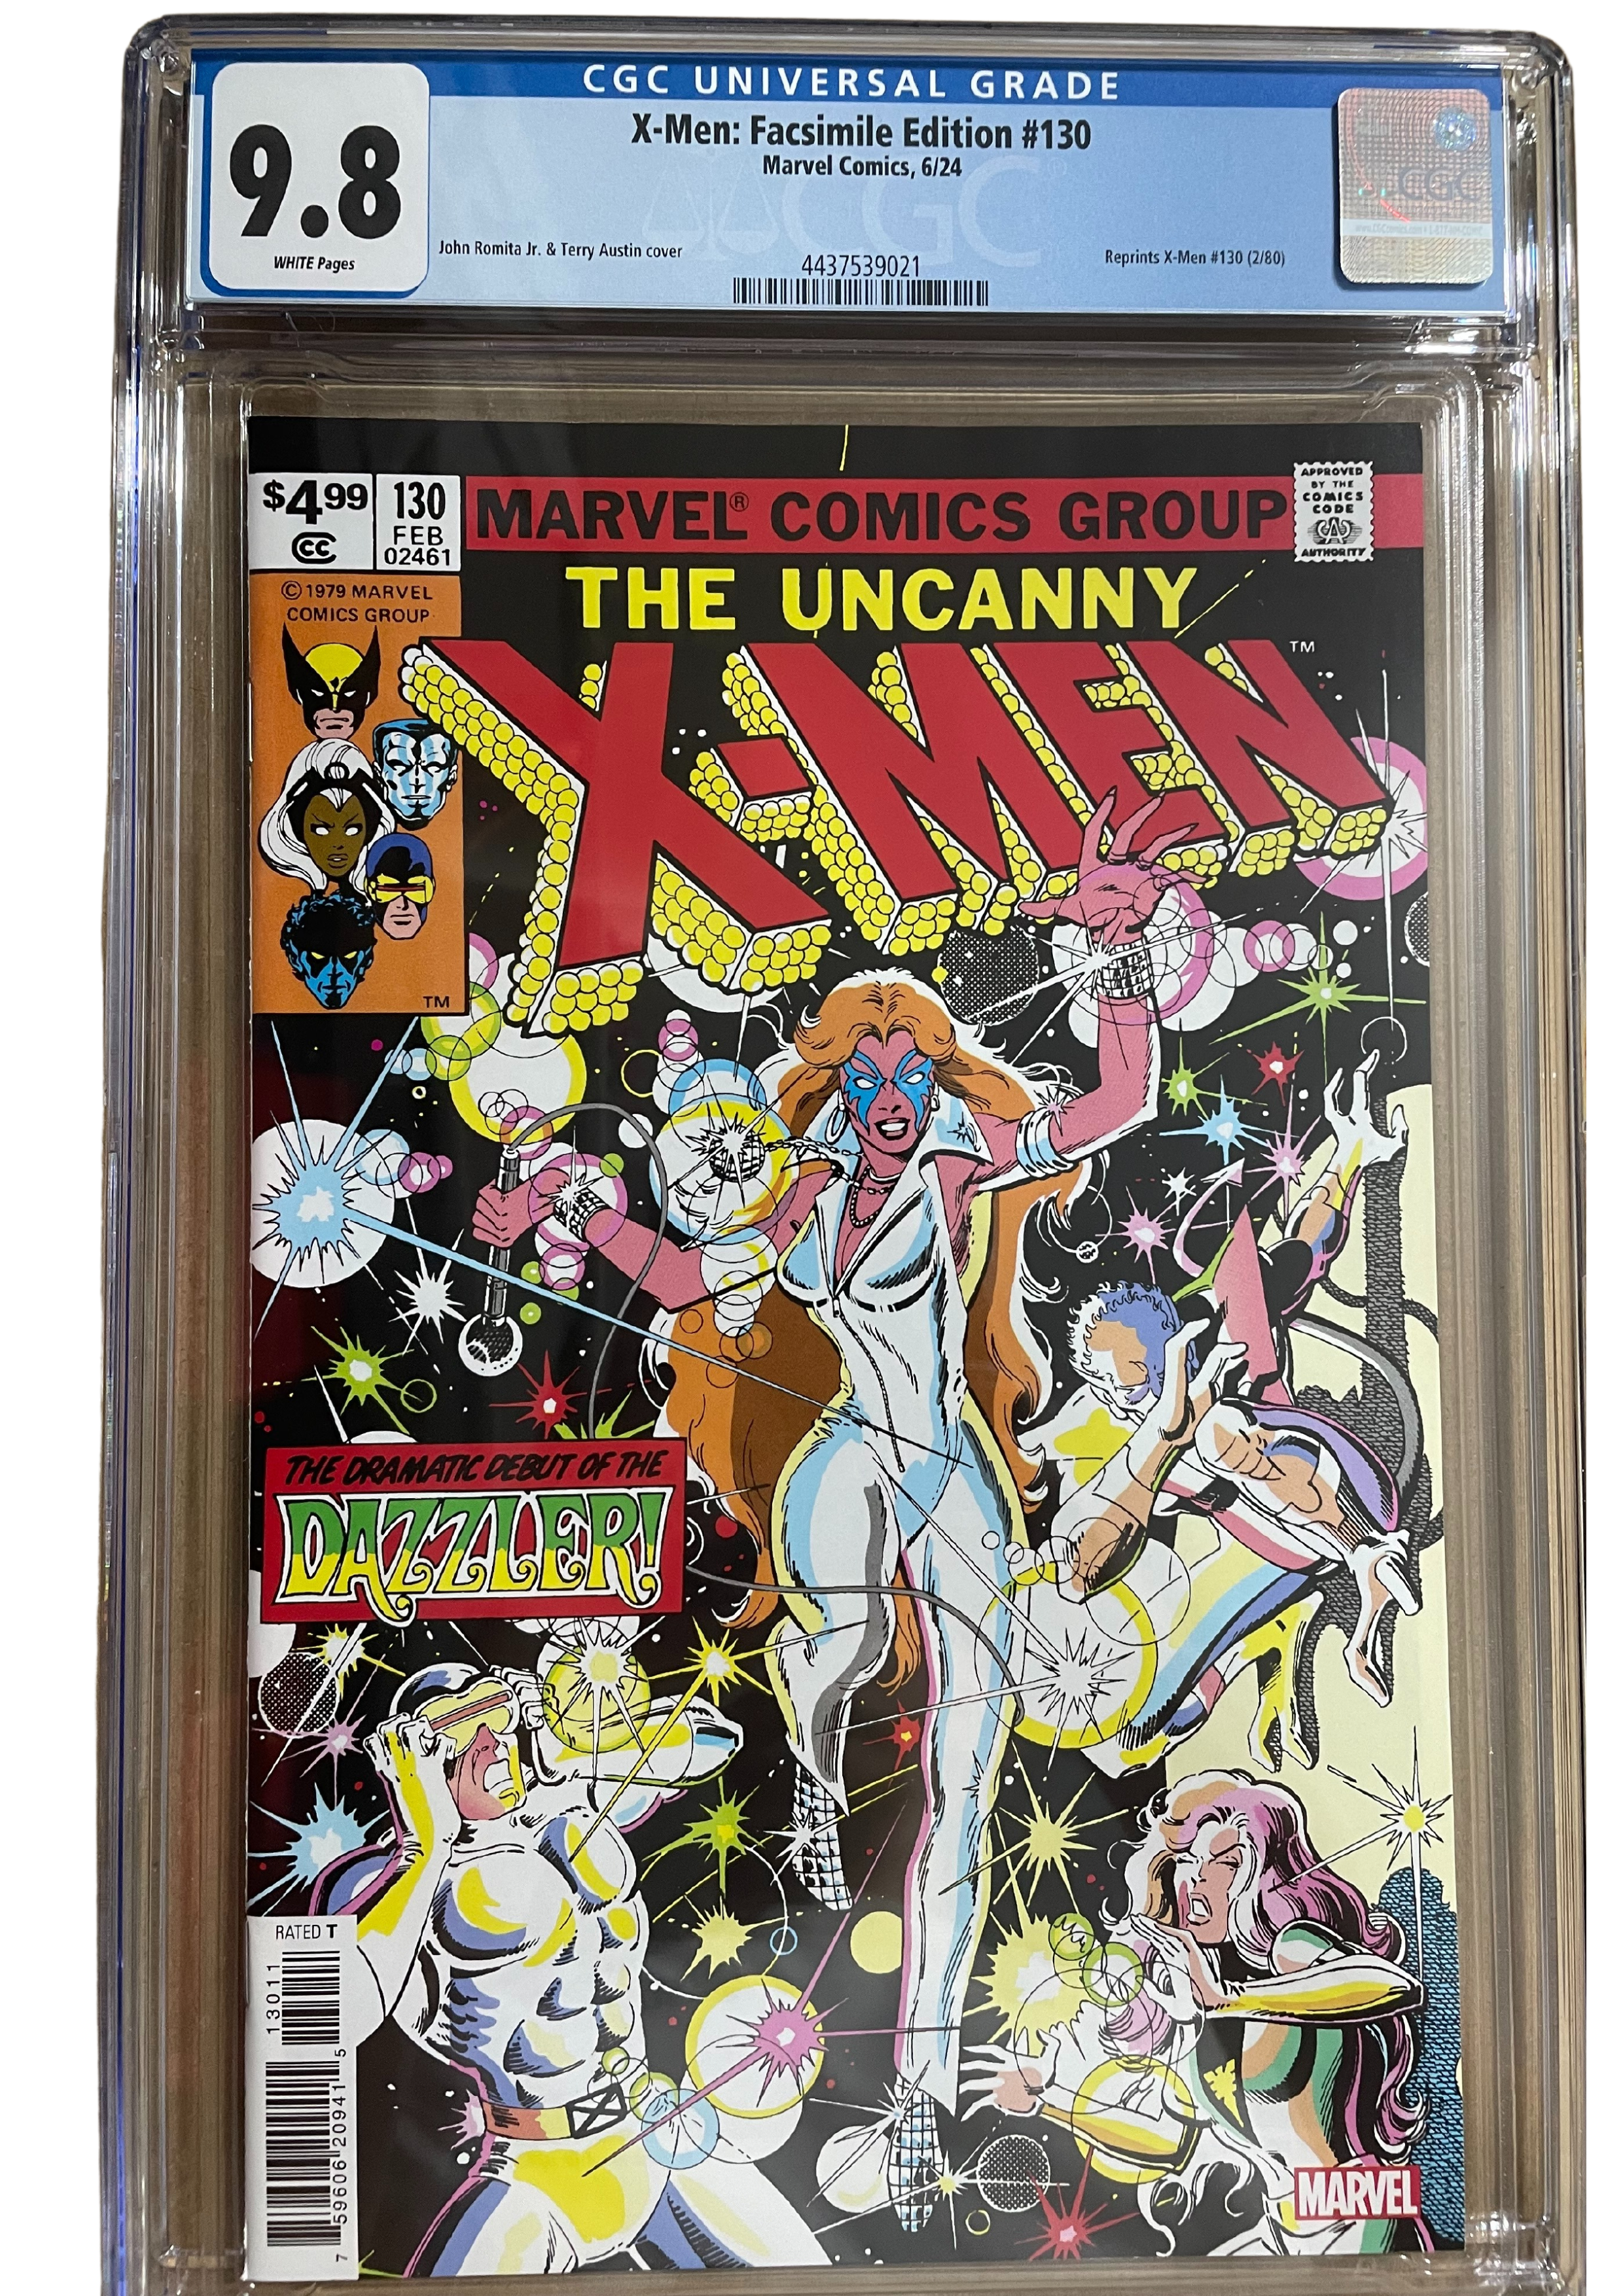 Uncanny X-Men #130 Facsimile Edition